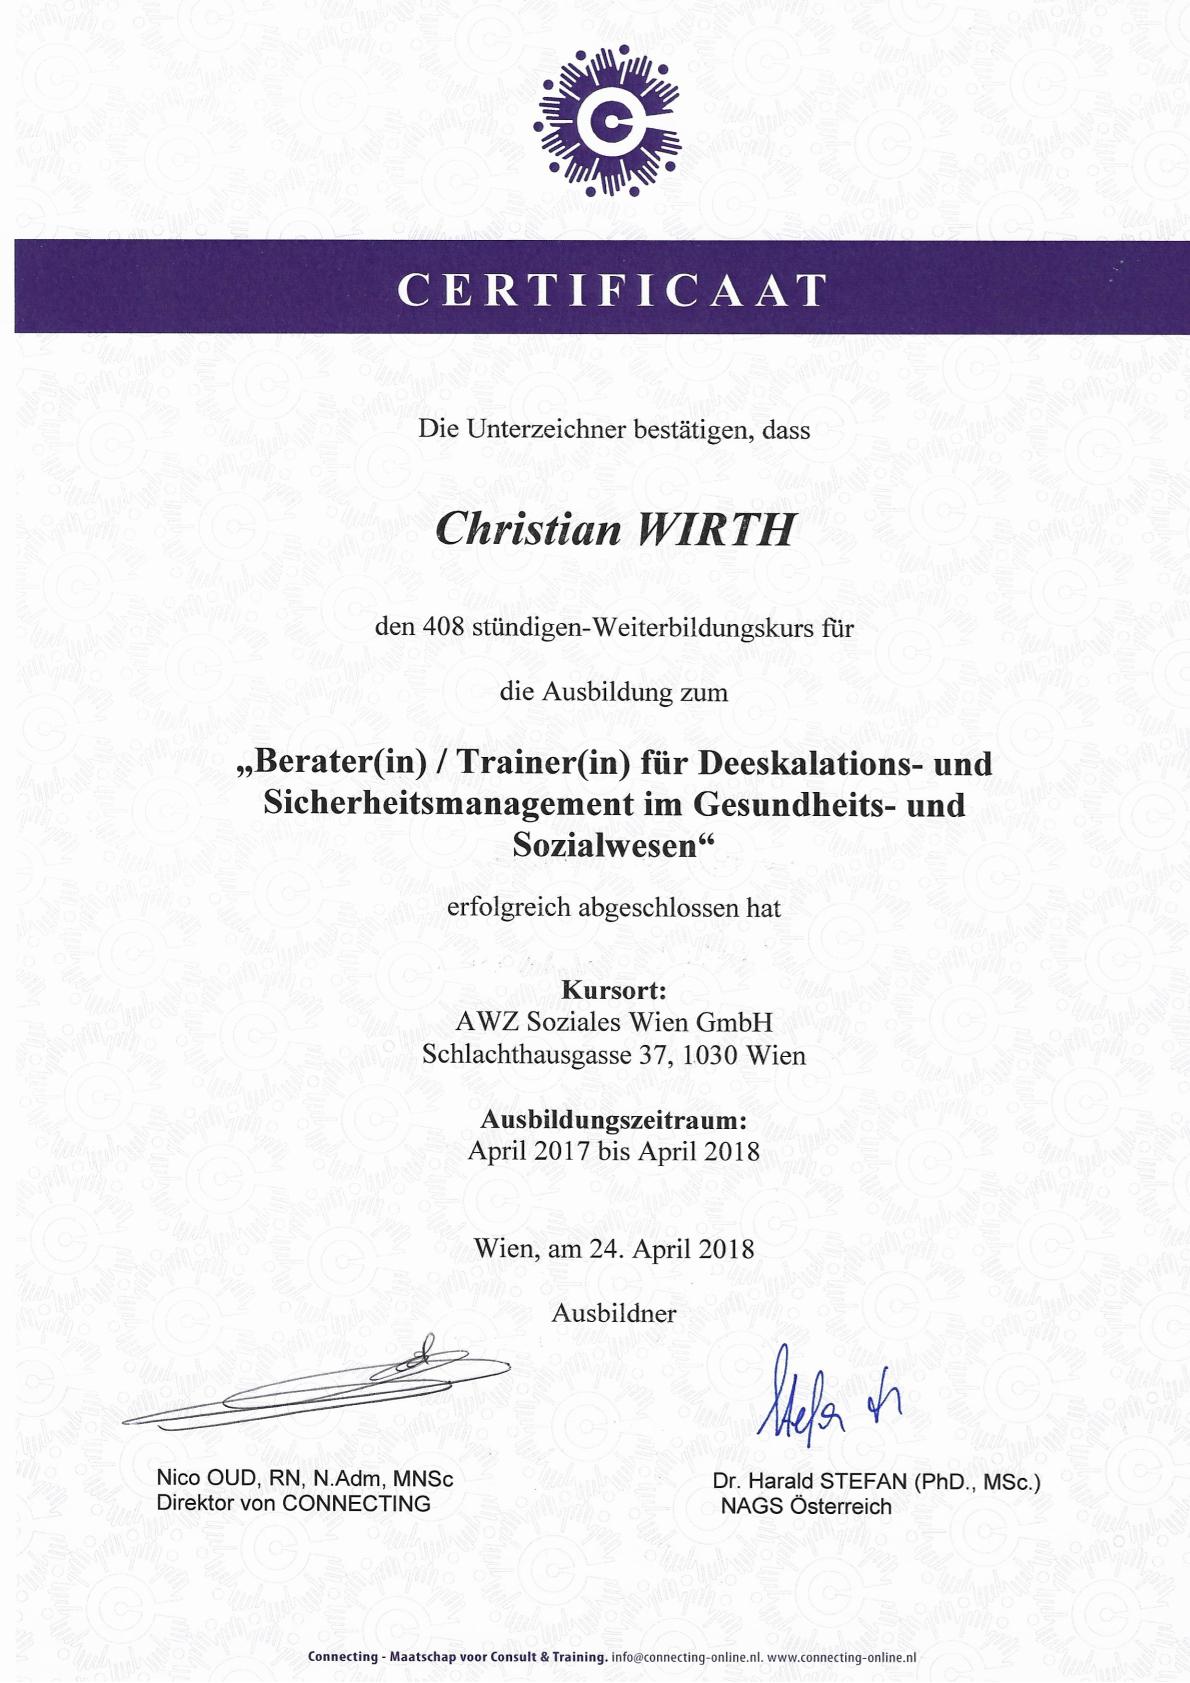 Christian Wirth - Experte & Coach für konfliktfreie Kommunikation - Zertifikat Trainer Deeskalation und Sicherheitsmanagement